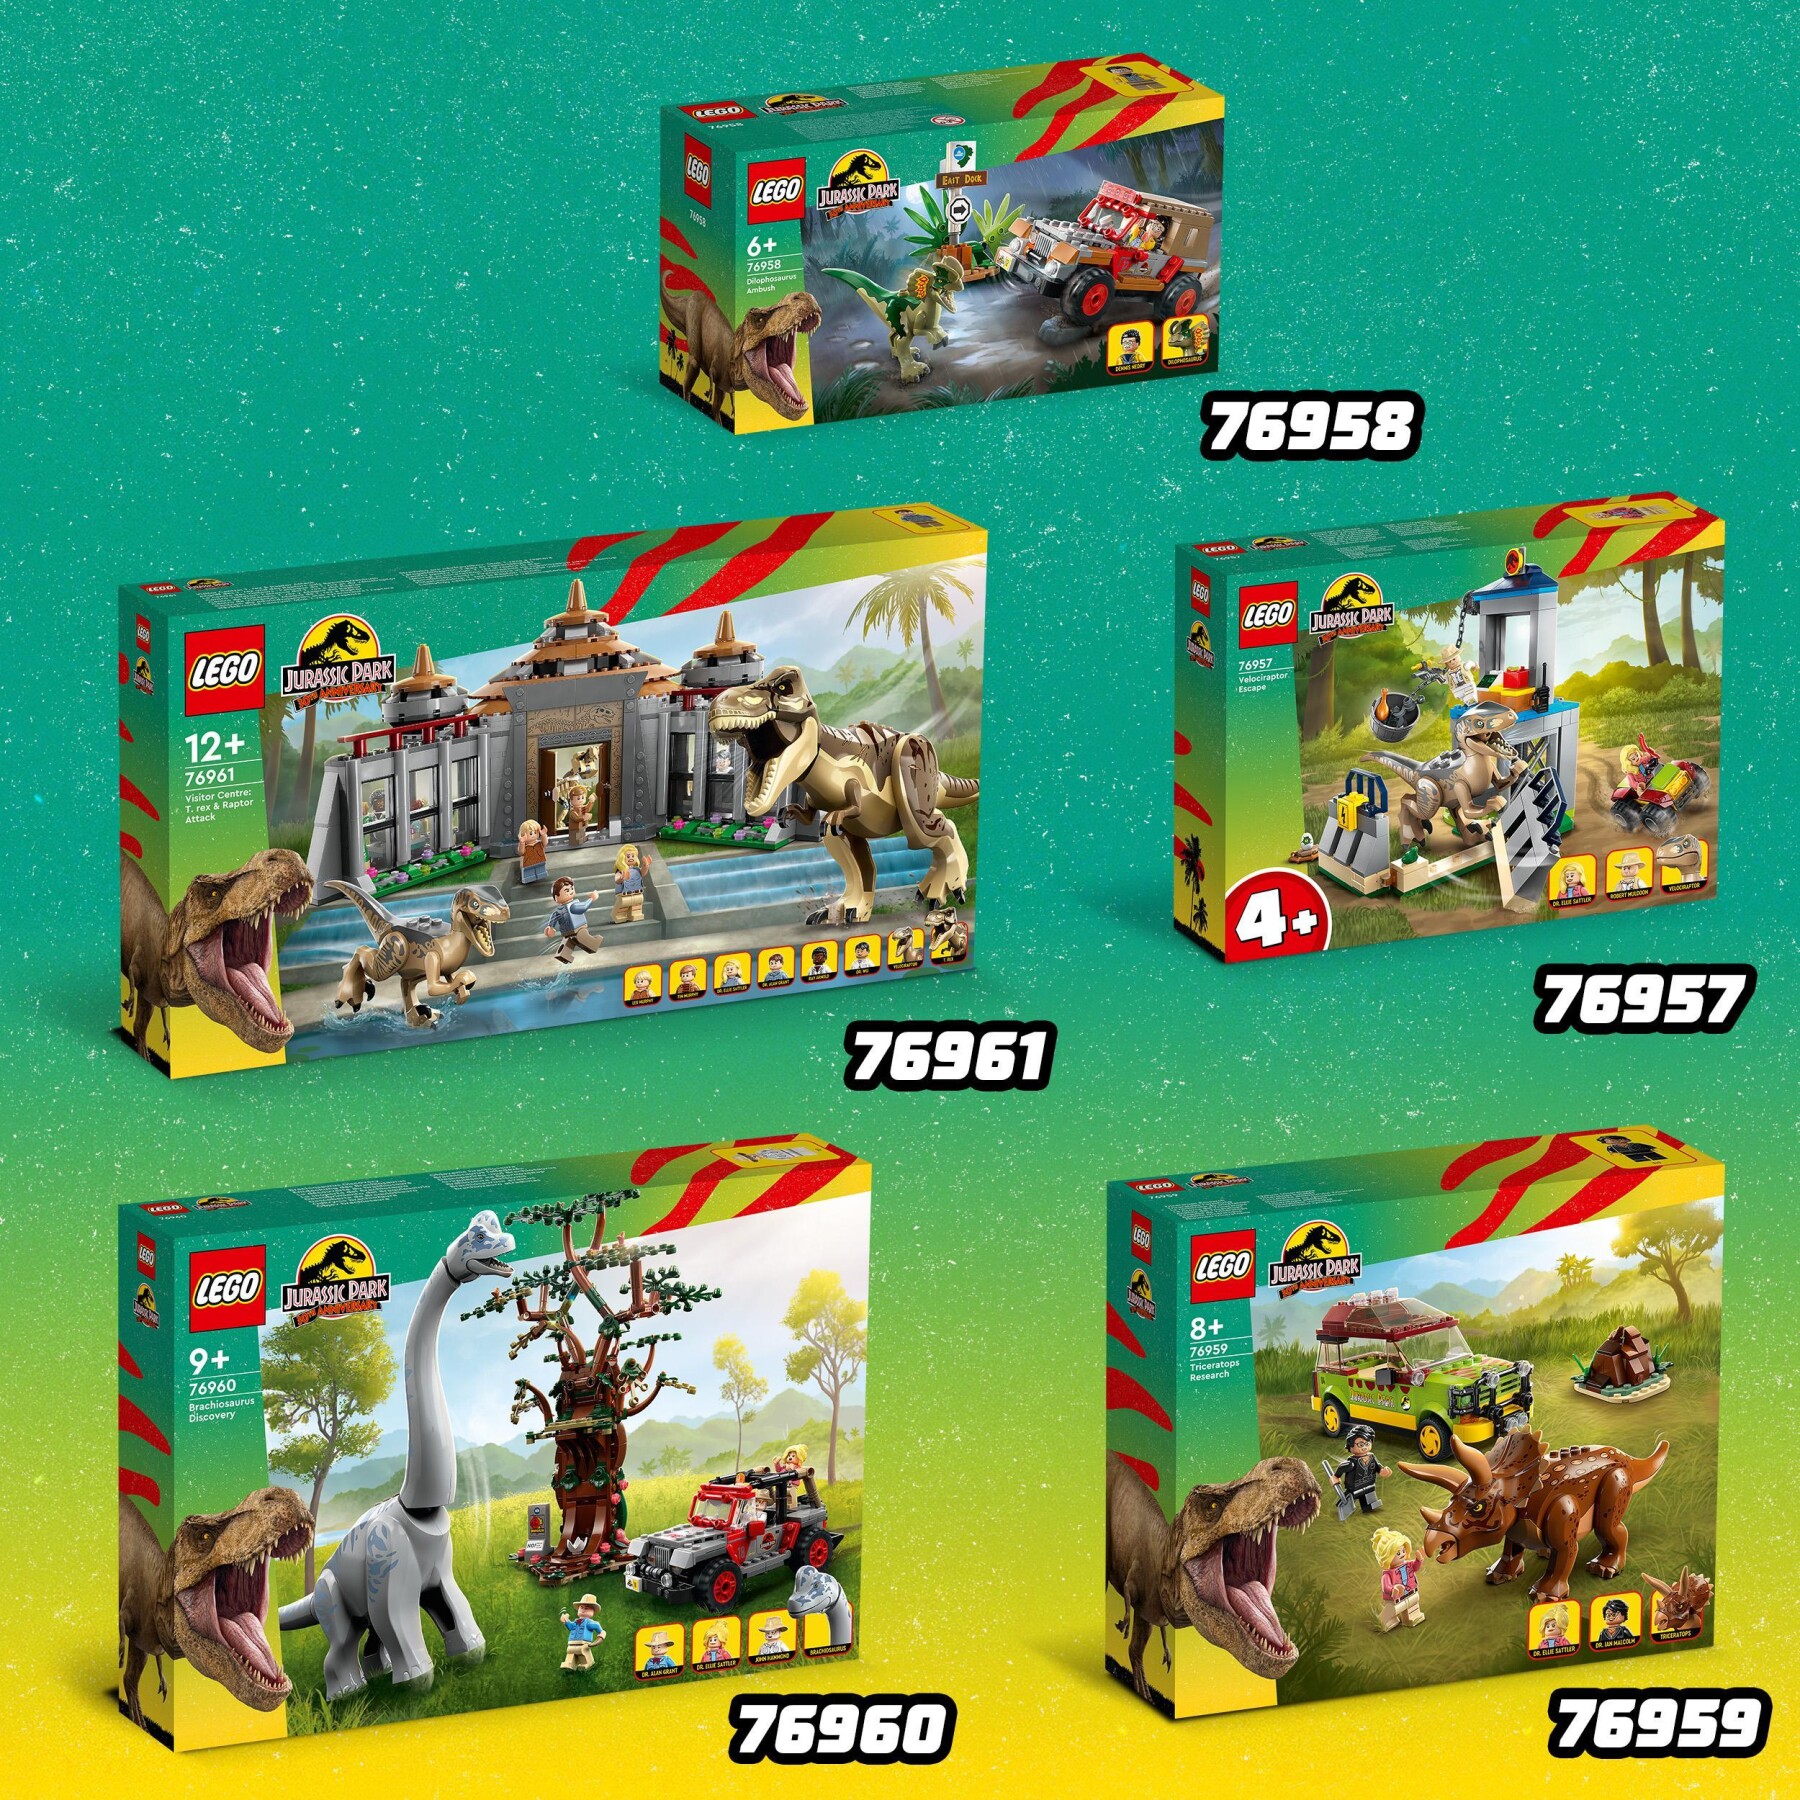 Lego jurassic park 76961 centro visitatori: l’attacco del t. rex e del raptor, set con 2 dinosauri giocattolo e 6 minifigure - Jurassic World, LEGO JURASSIC PARK/W